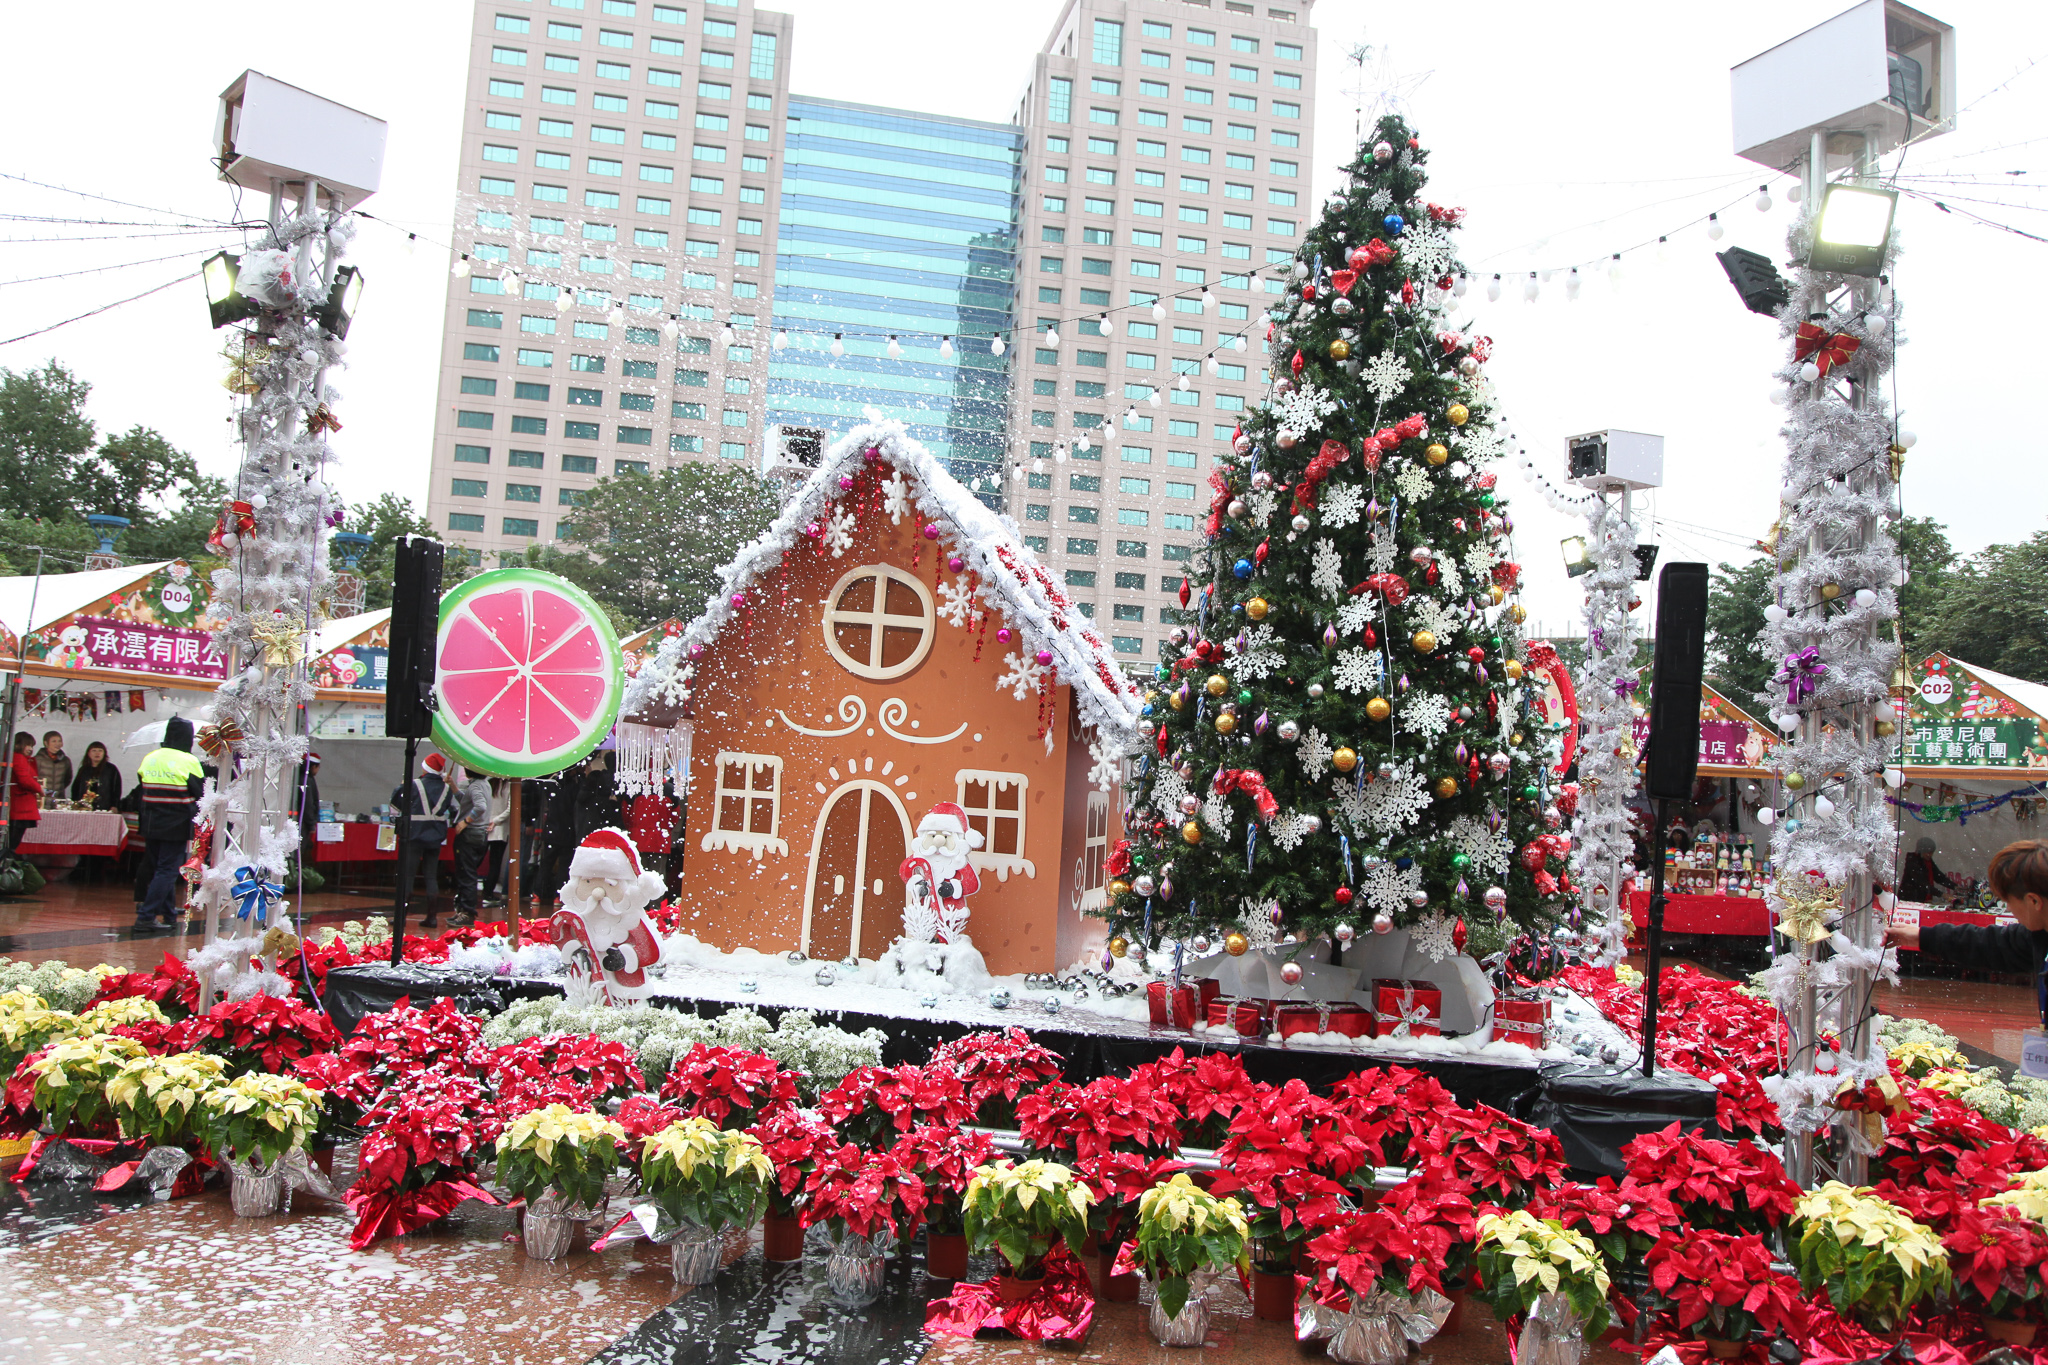 新北耶誕市集設置大型薑餅屋、棒棒糖、耶誕樹及耶誕雪景等浪漫造景